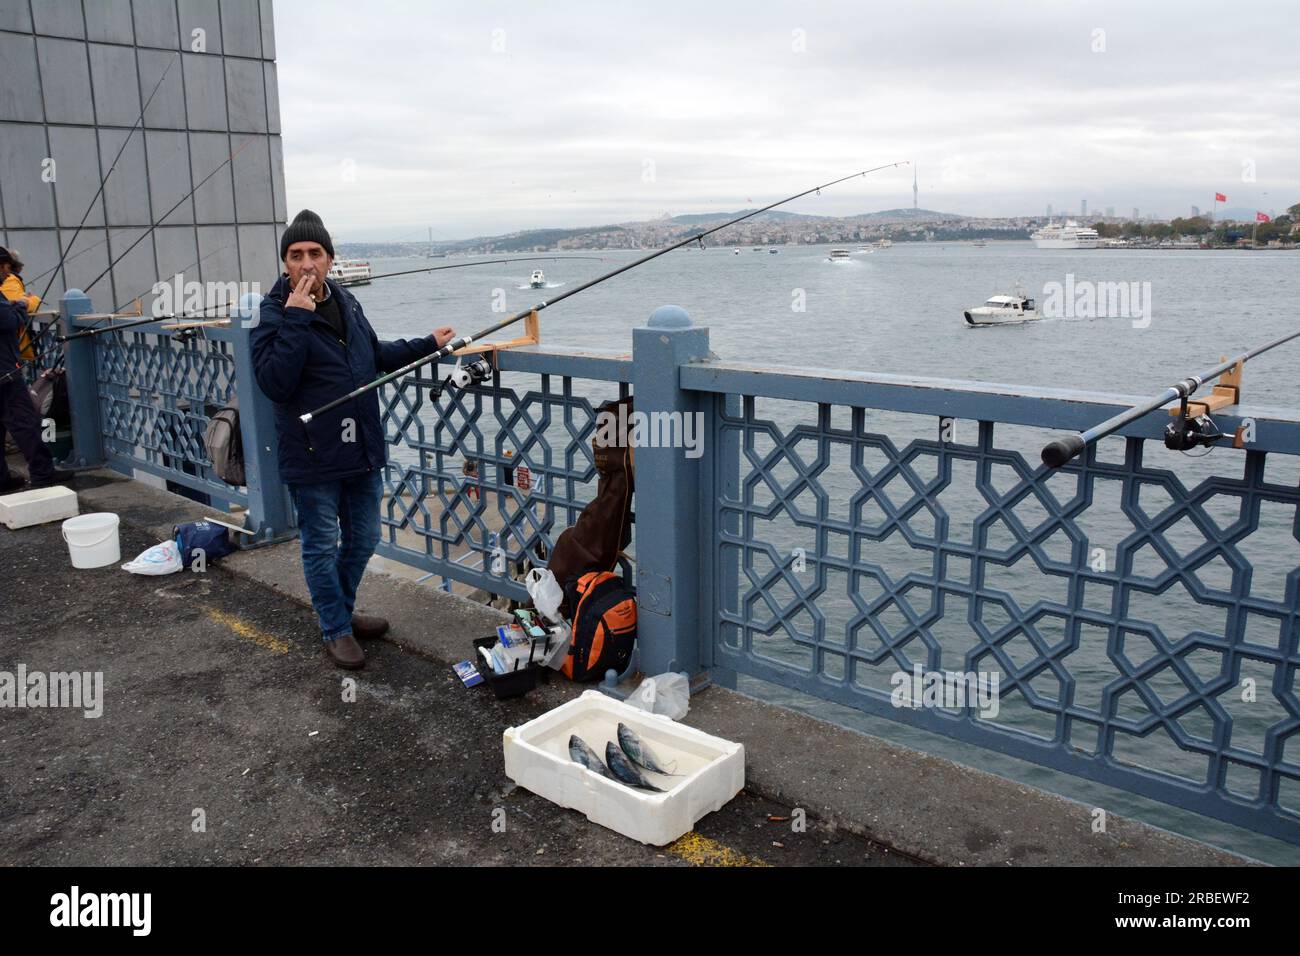 Un pêcheur turc jette sa canne à pêche et expose son poisson sur le pont de Galata au-dessus de la Corne d'Or et du détroit du Bosphore, Istanbul, Turquie. Banque D'Images